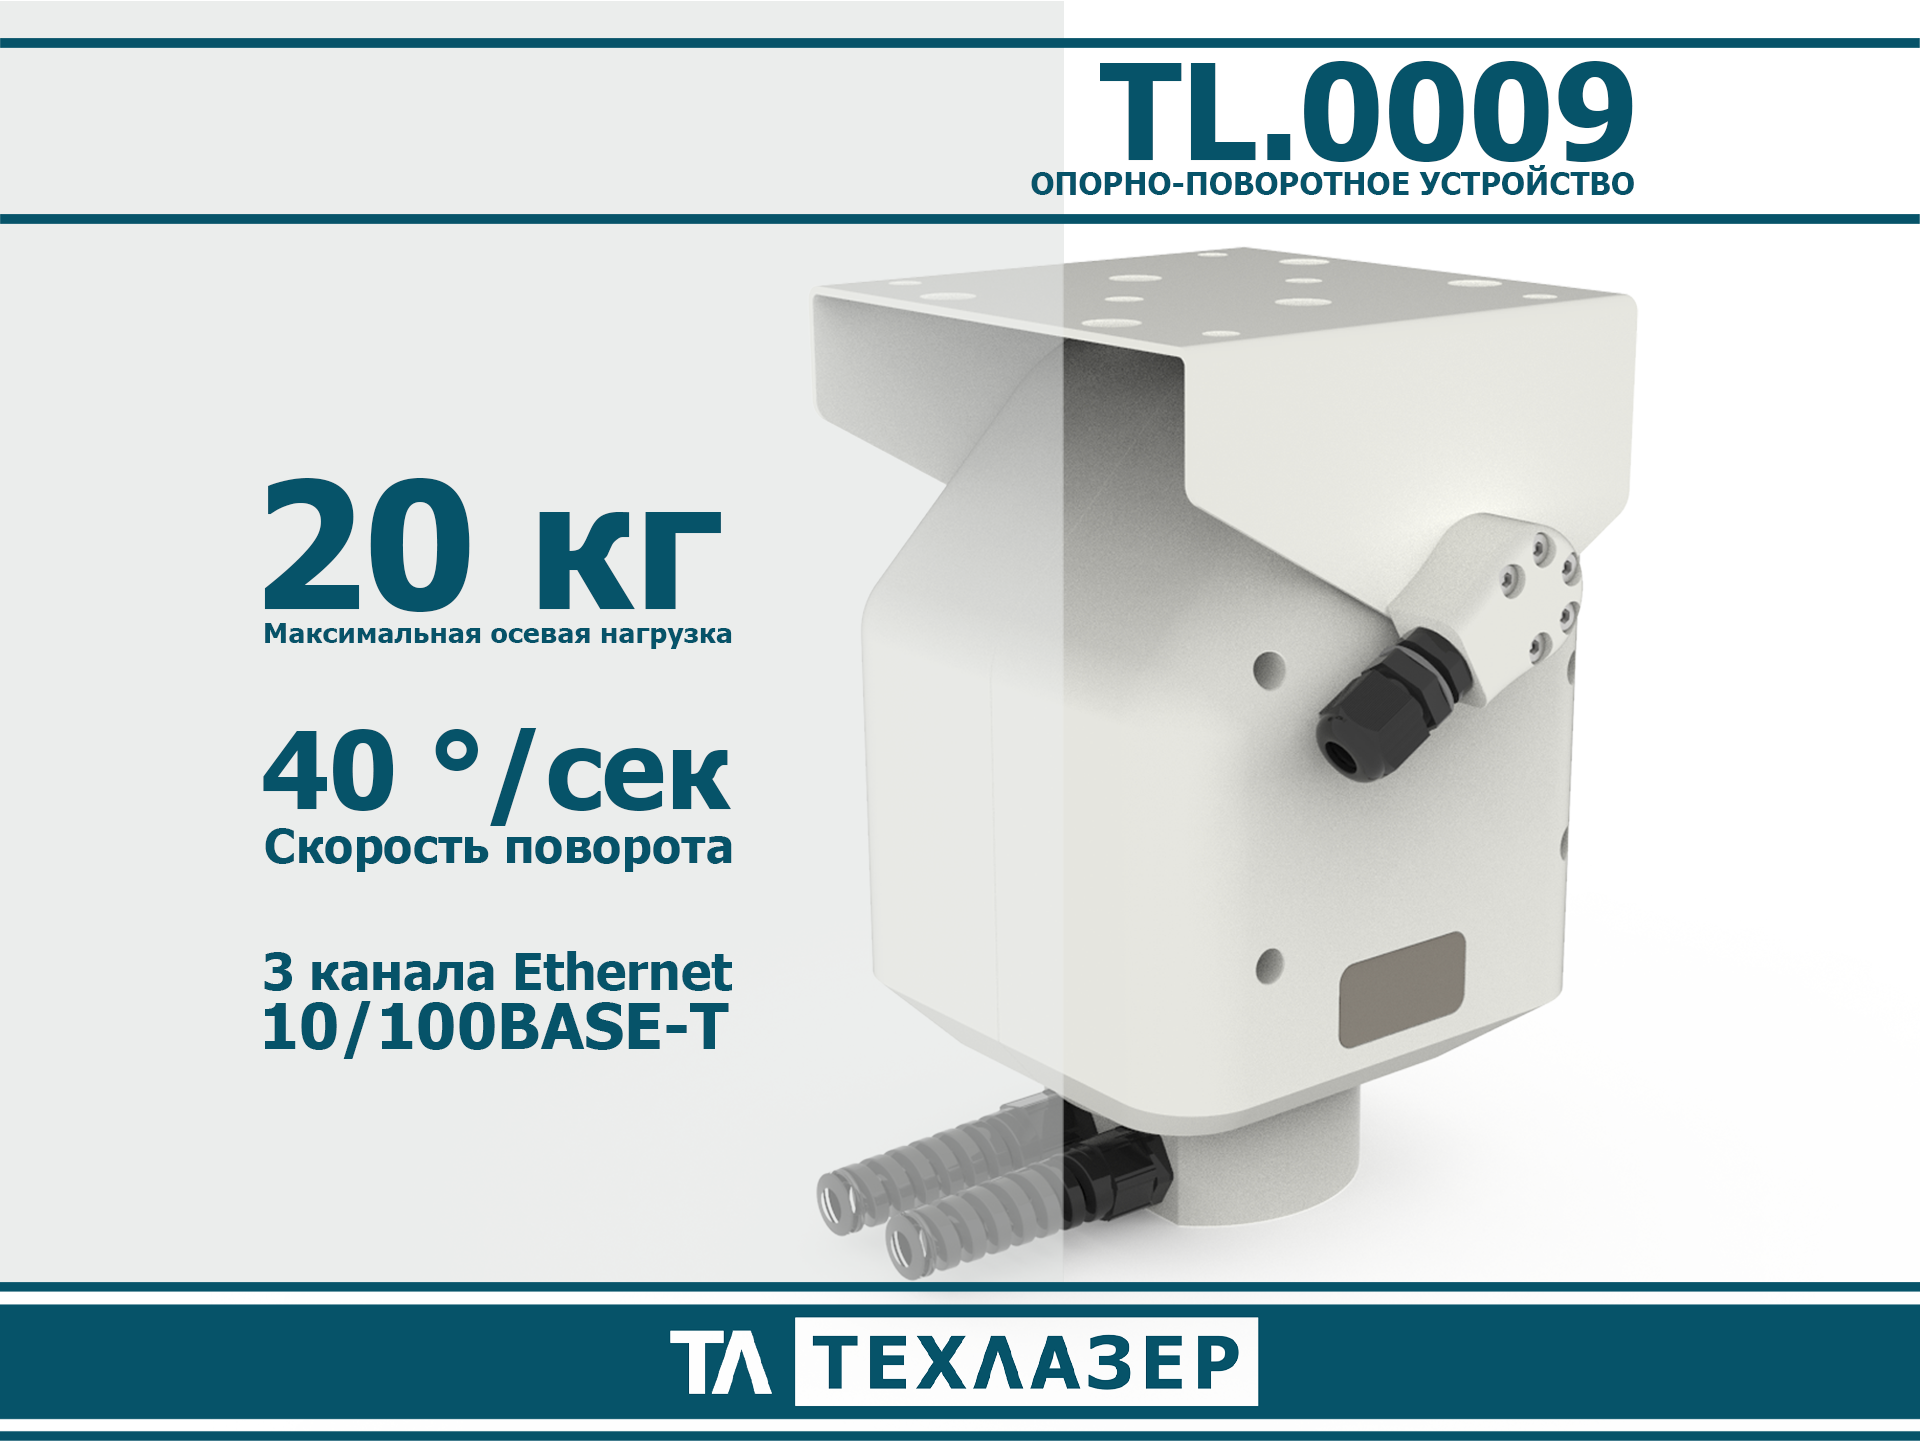 Опорно-поворотное устройство TL.0009 ТехЛазер